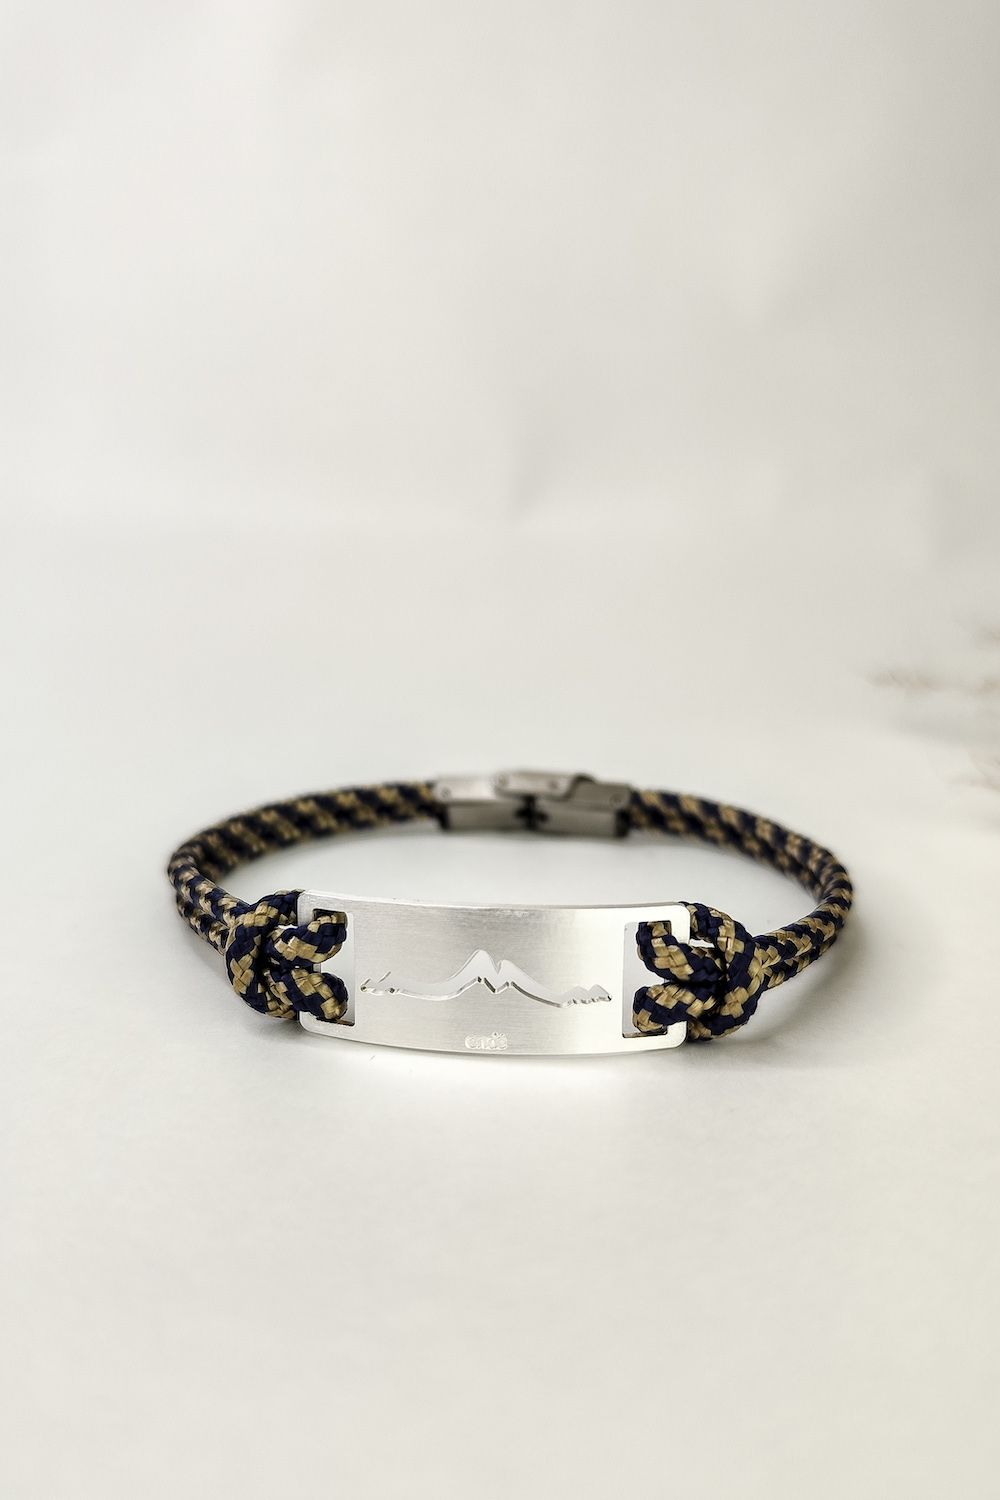 Bracelet montagne homme, motif liomaz - argent - bijoux Endé